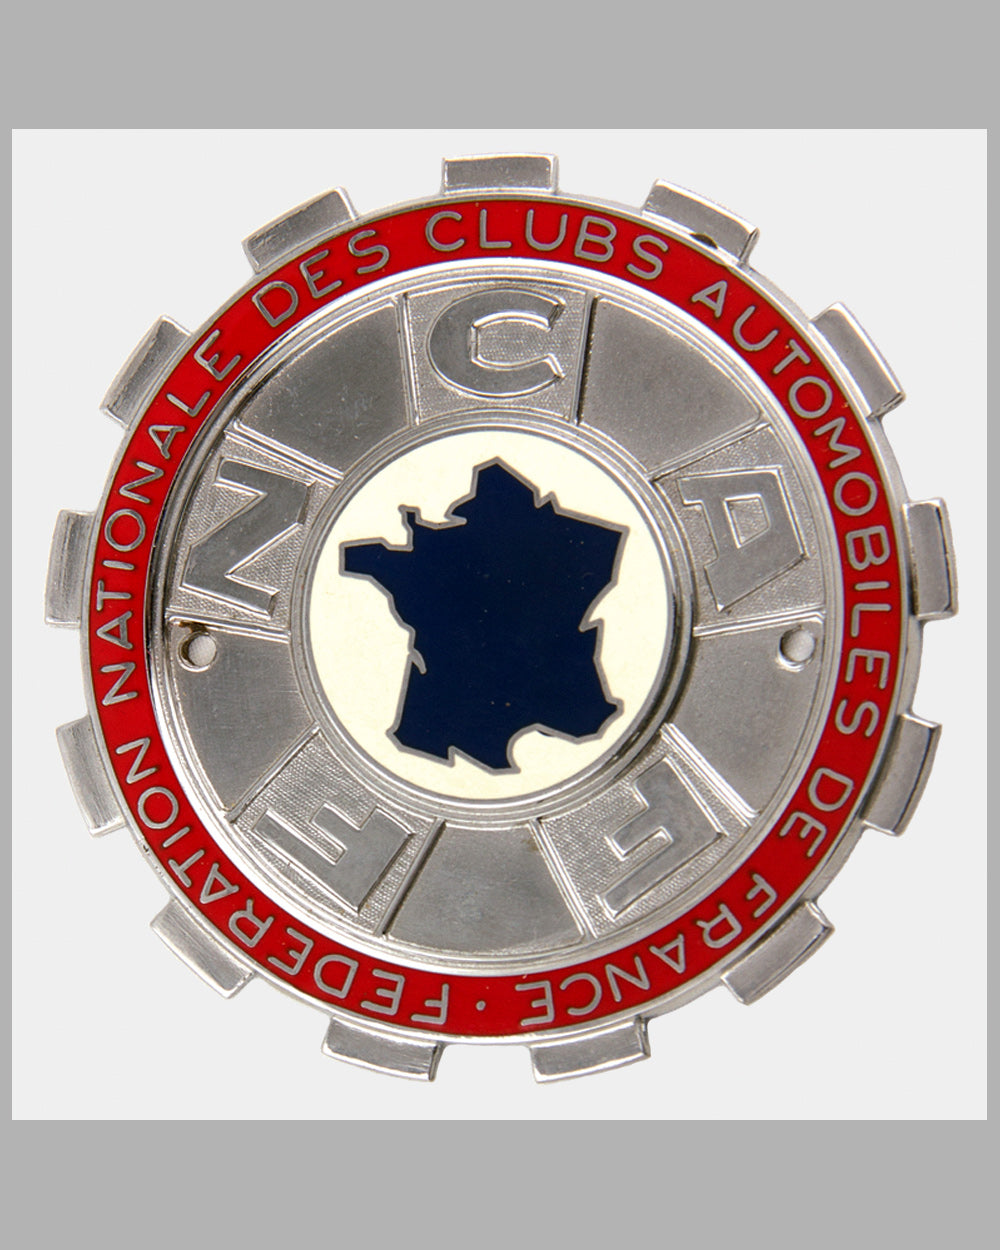 Federation Nationale des Clubs Automobiles de France member’s badge